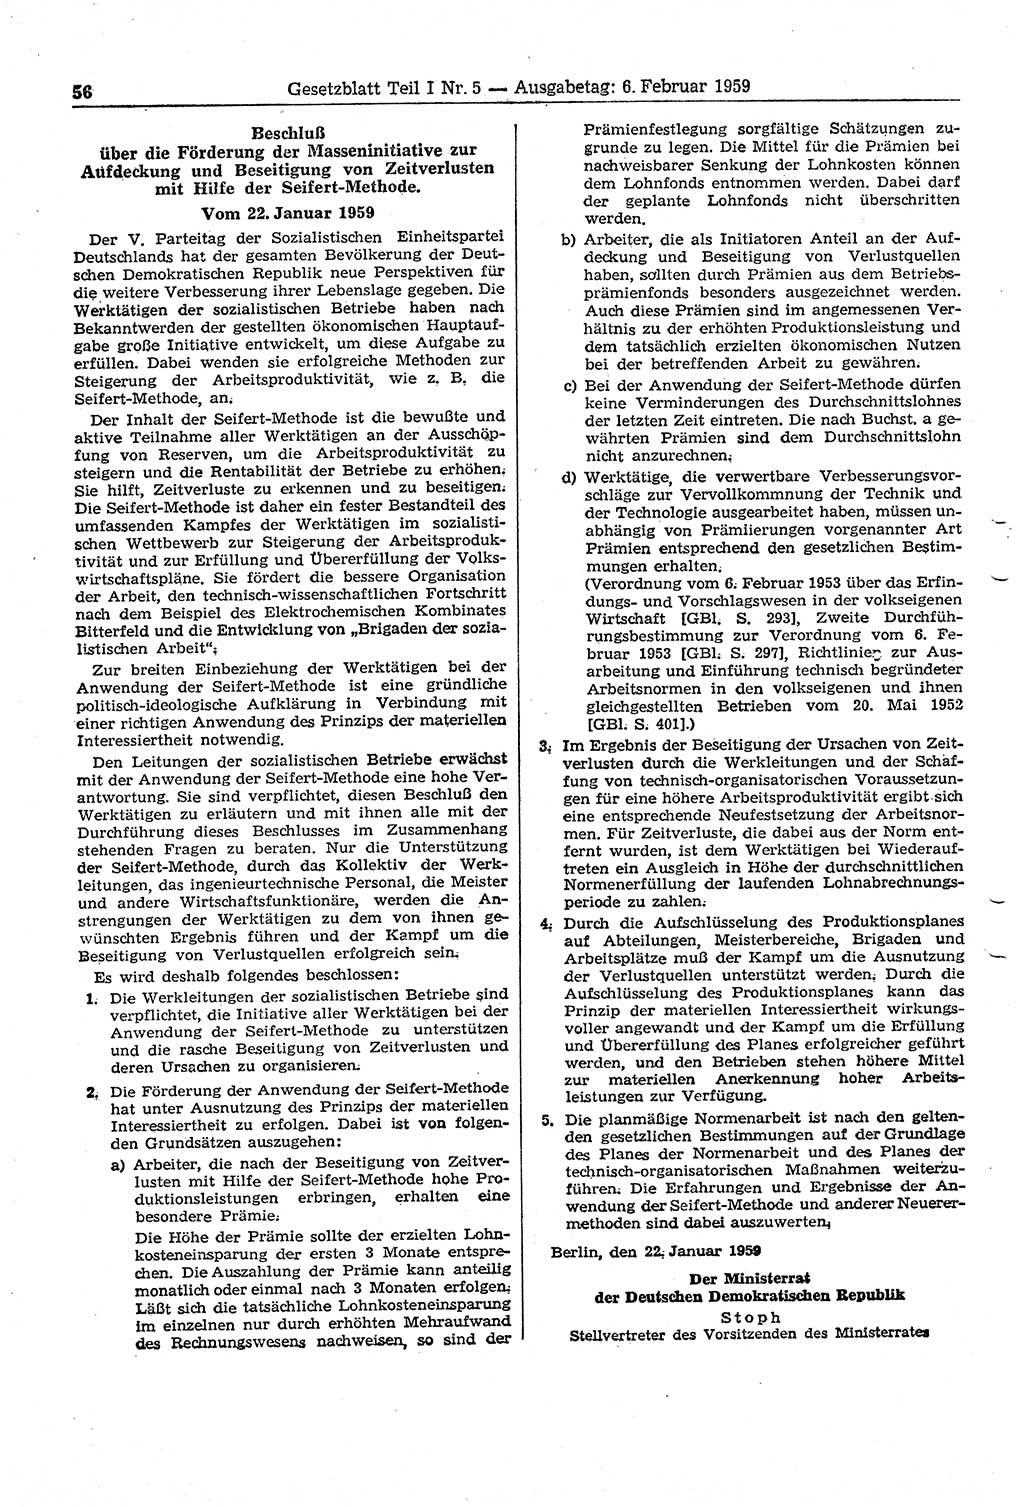 Gesetzblatt (GBl.) der Deutschen Demokratischen Republik (DDR) Teil Ⅰ 1959, Seite 56 (GBl. DDR Ⅰ 1959, S. 56)